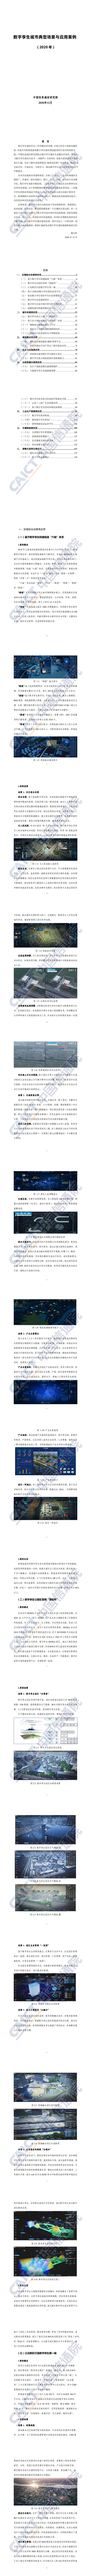 【中国信通院】数字孪生城市典型场景与应用案例（2020年）_0.jpg